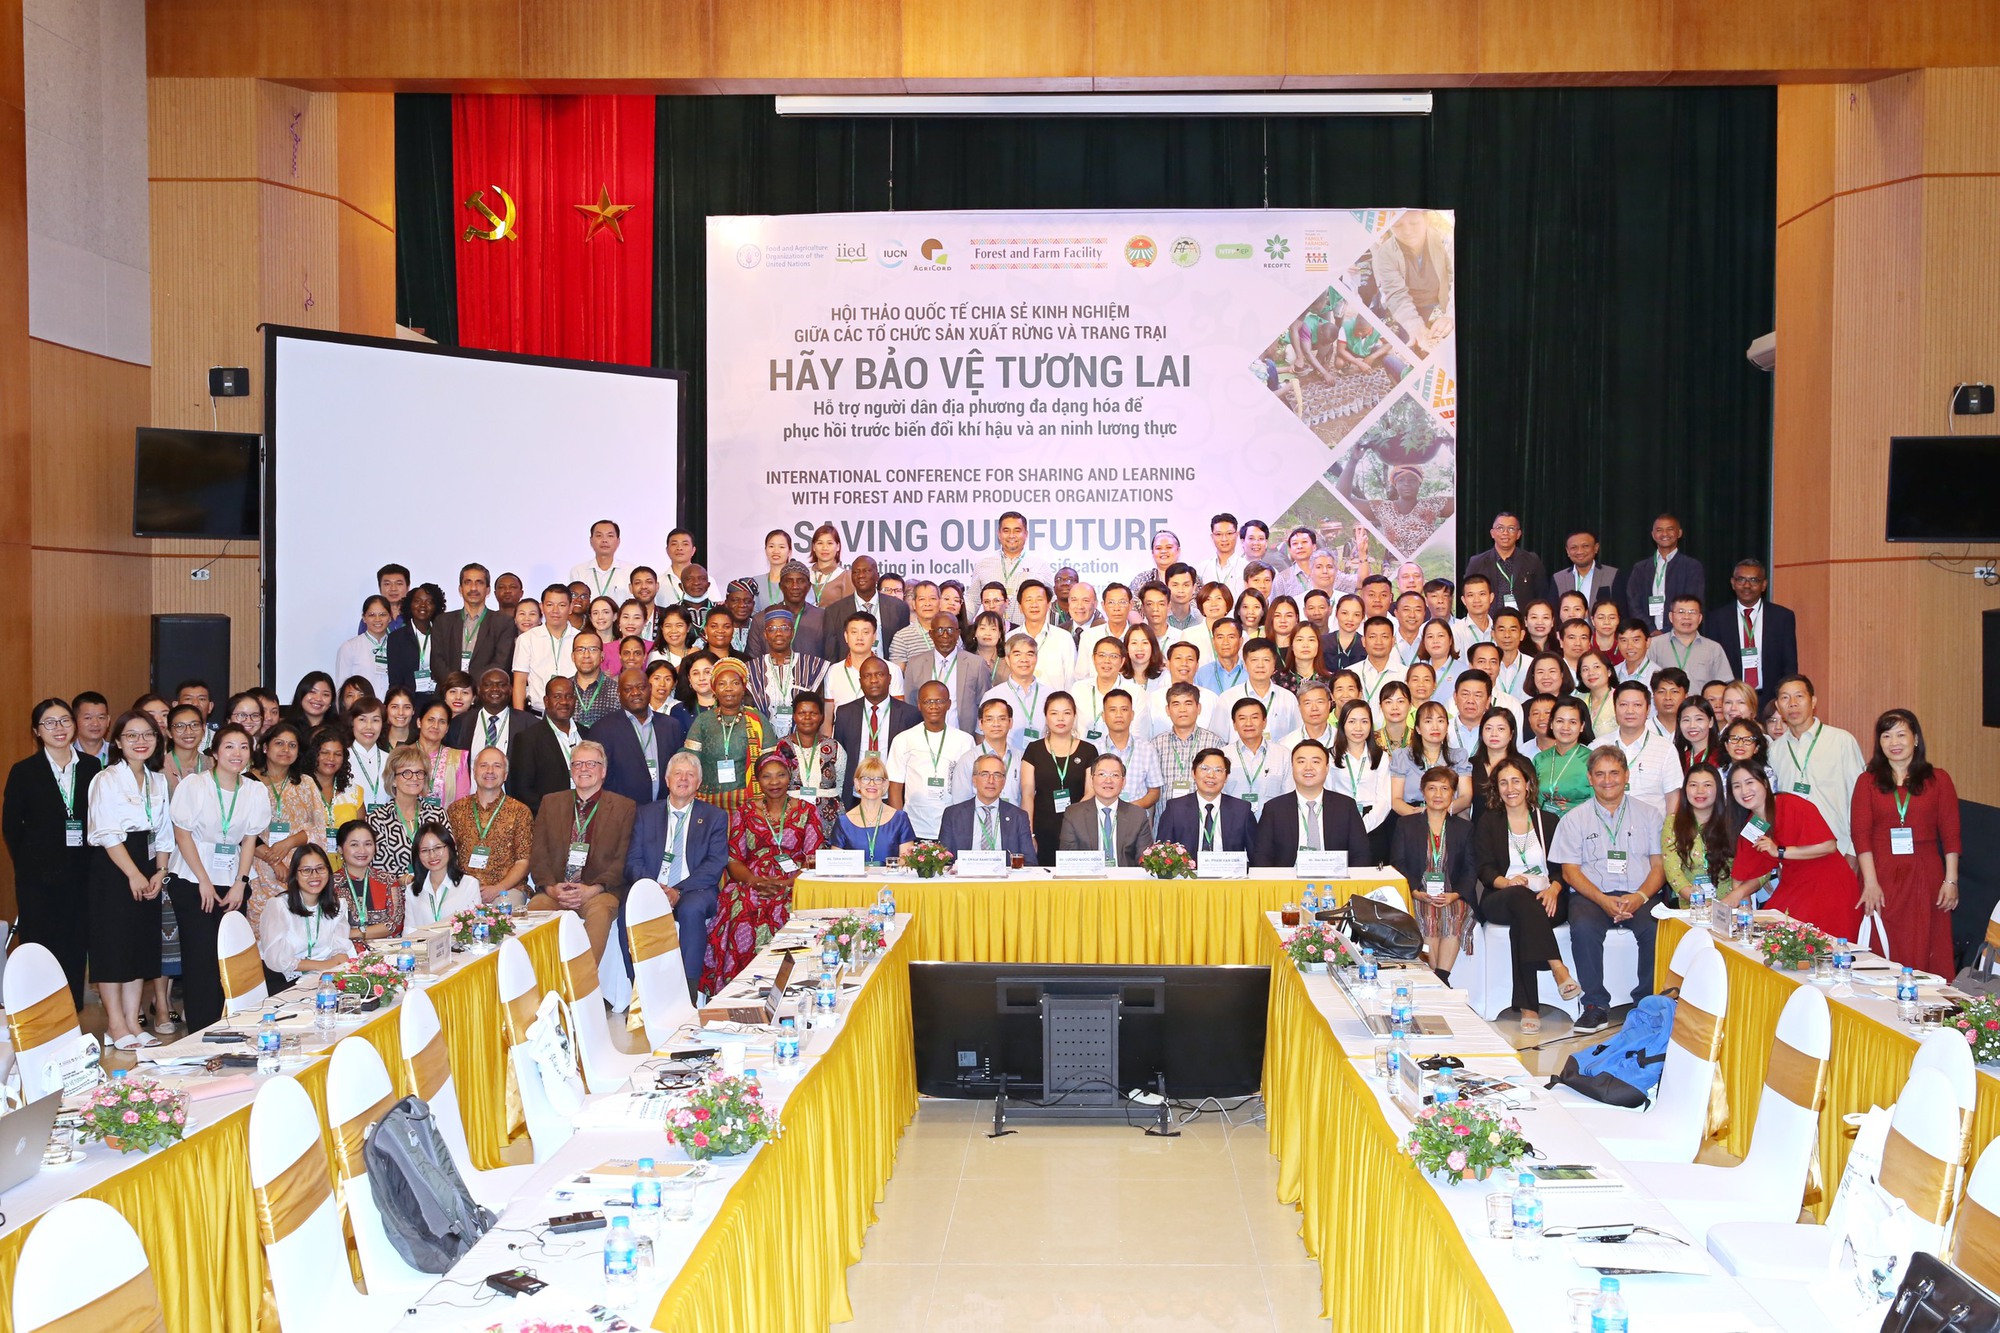 Hội Nông dân Việt Nam tổ chức Hội thảo quốc tế chia sẻ kinh nghiệm giữa các tổ chức sản xuất rừng và trang trại - Ảnh 7.